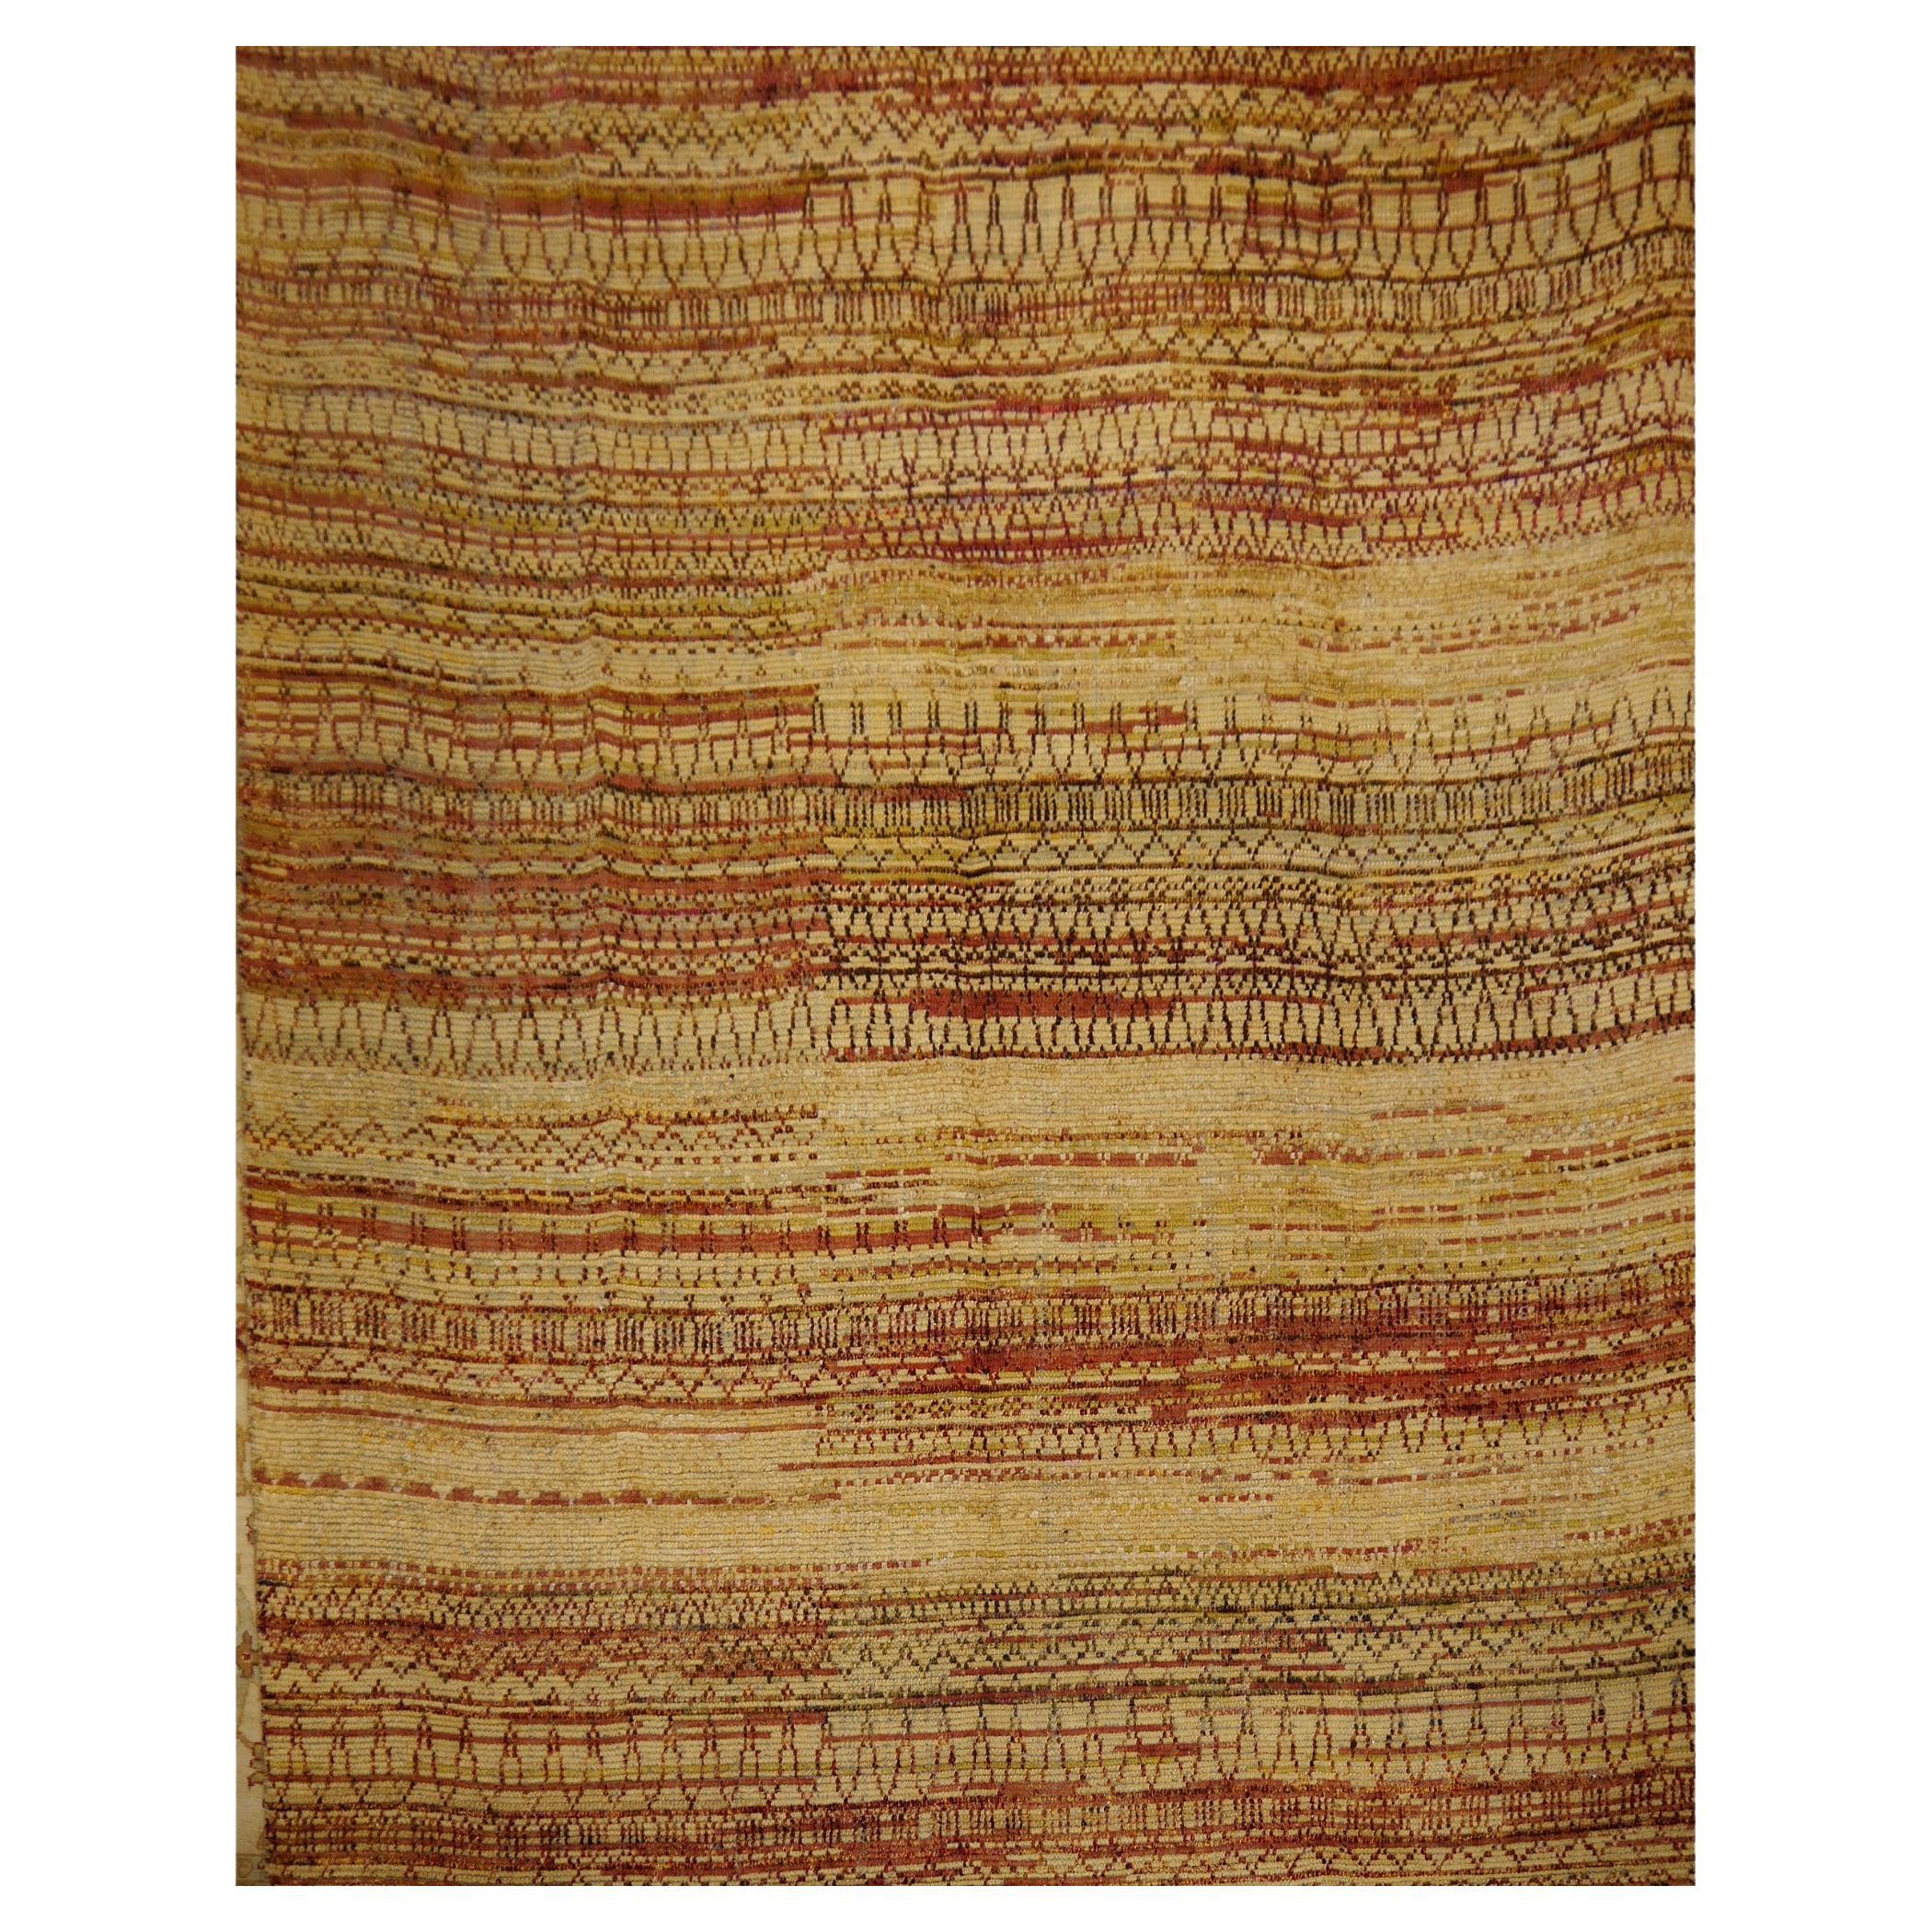 Zeitgenössischer moderner handgeknüpfter Teppich aus Wolle und Seide aus der Djoharian-Kollektion